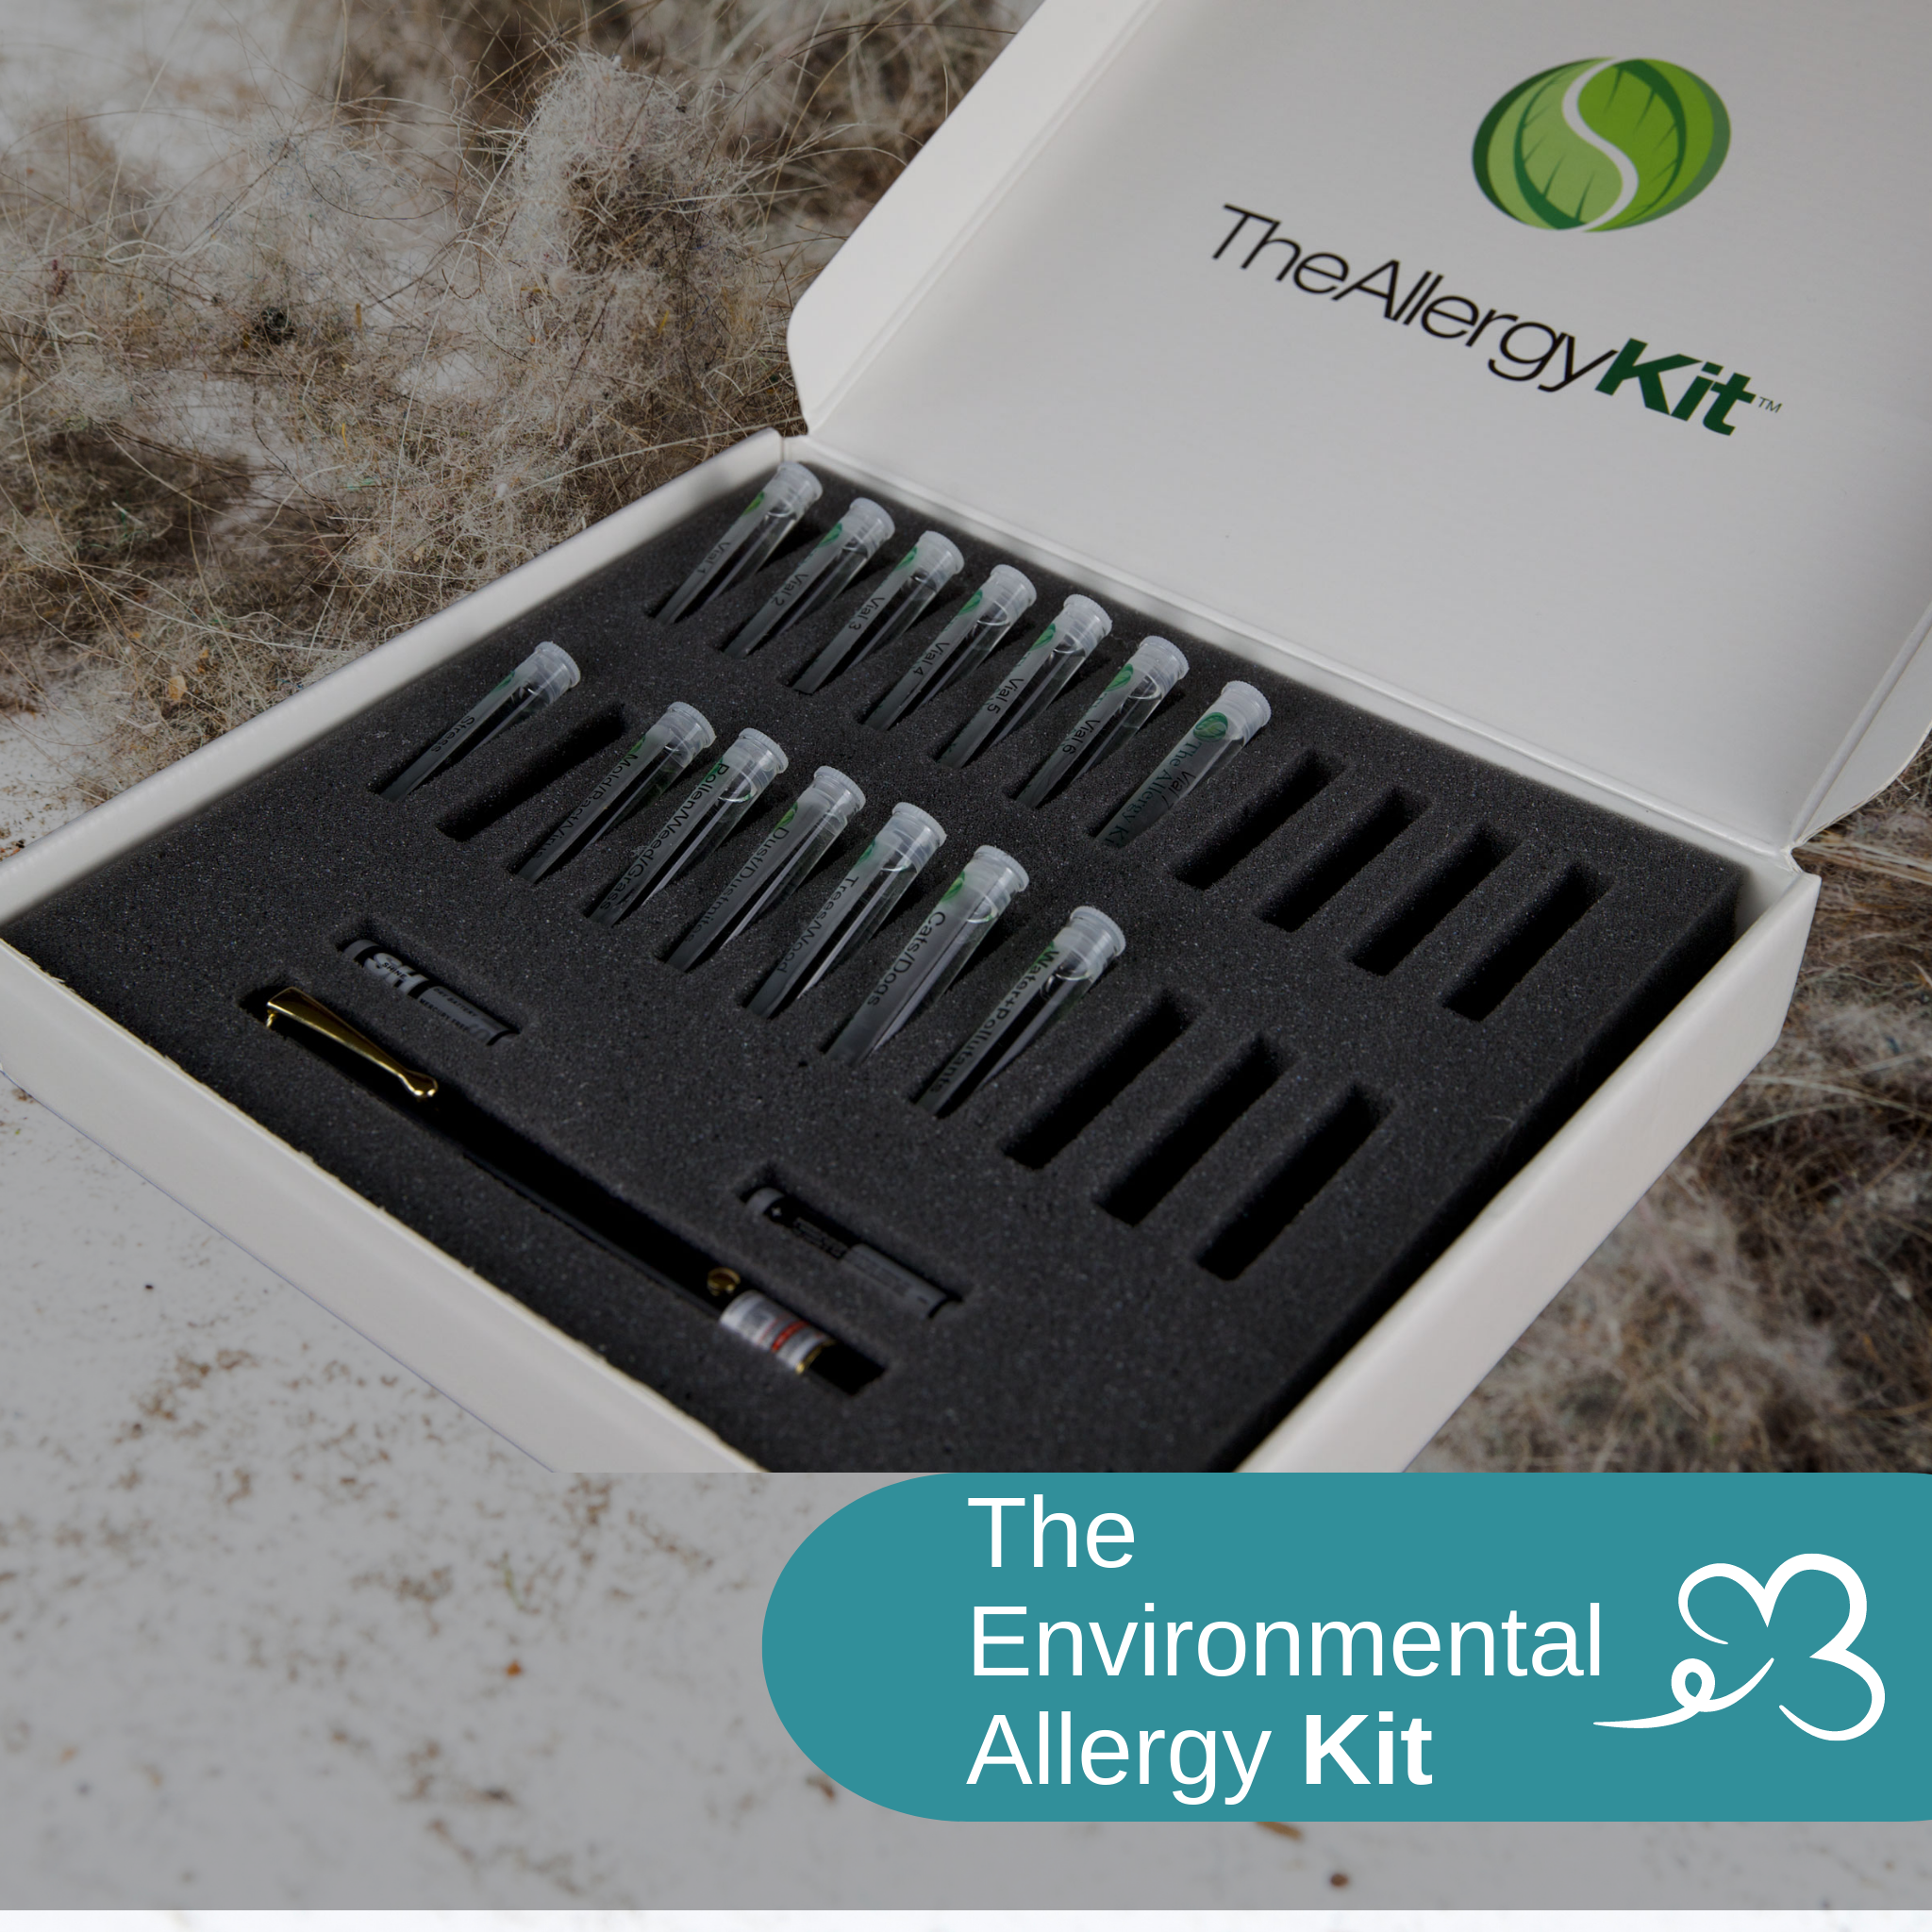 The Environmental Allergy Kit